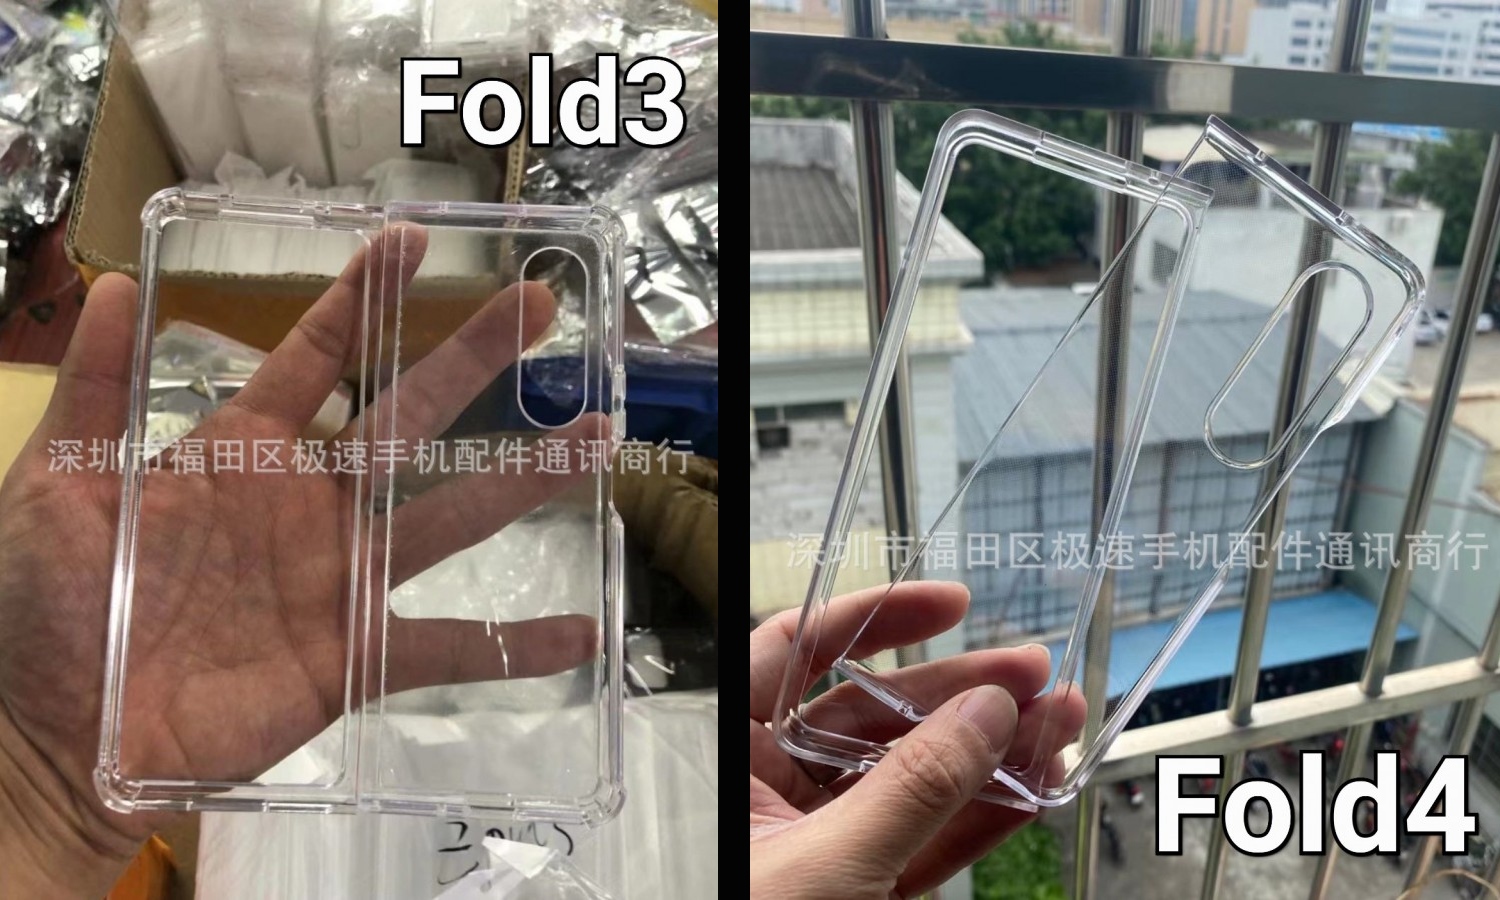 قاب Galaxy Z Fold 3 را با قاب Z Fold 4 مقایسه کنید